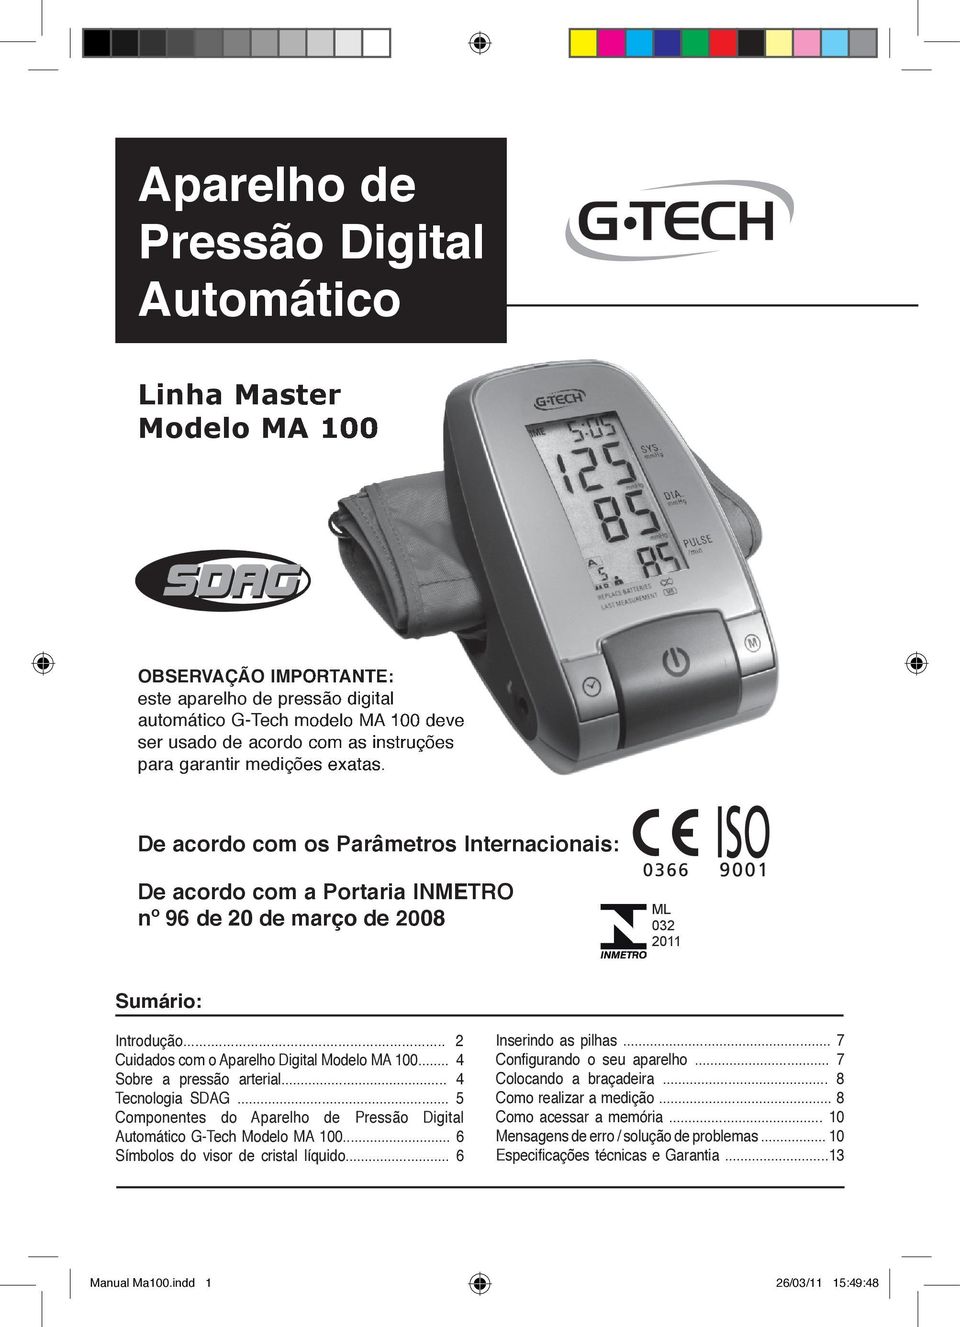 .. 2 Cuidados com o Aparelho Digital Modelo MA 100... 4 Sobre a pressão arterial... 4 Tecnologia SDAG... 5 Componentes do Aparelho de Pressão Digital Automático G-Tech Modelo MA 100.